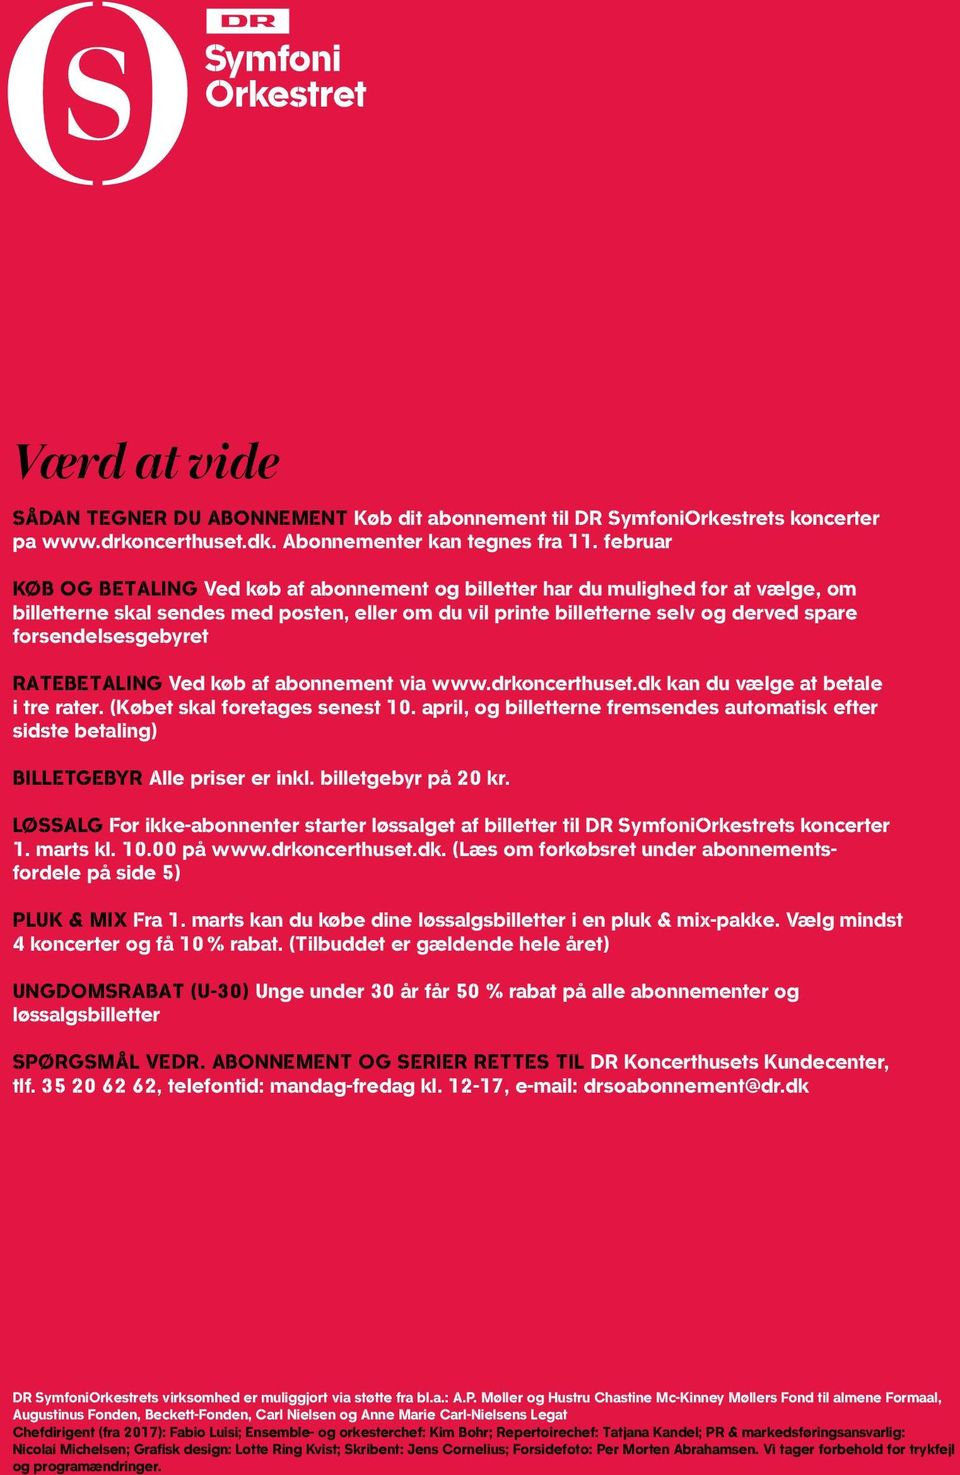 RTEETING Ved køb af abonnement via www.drkoncerthuset.dk kan du vælge at betale i tre rater. (Købet skal foretages senest 10.